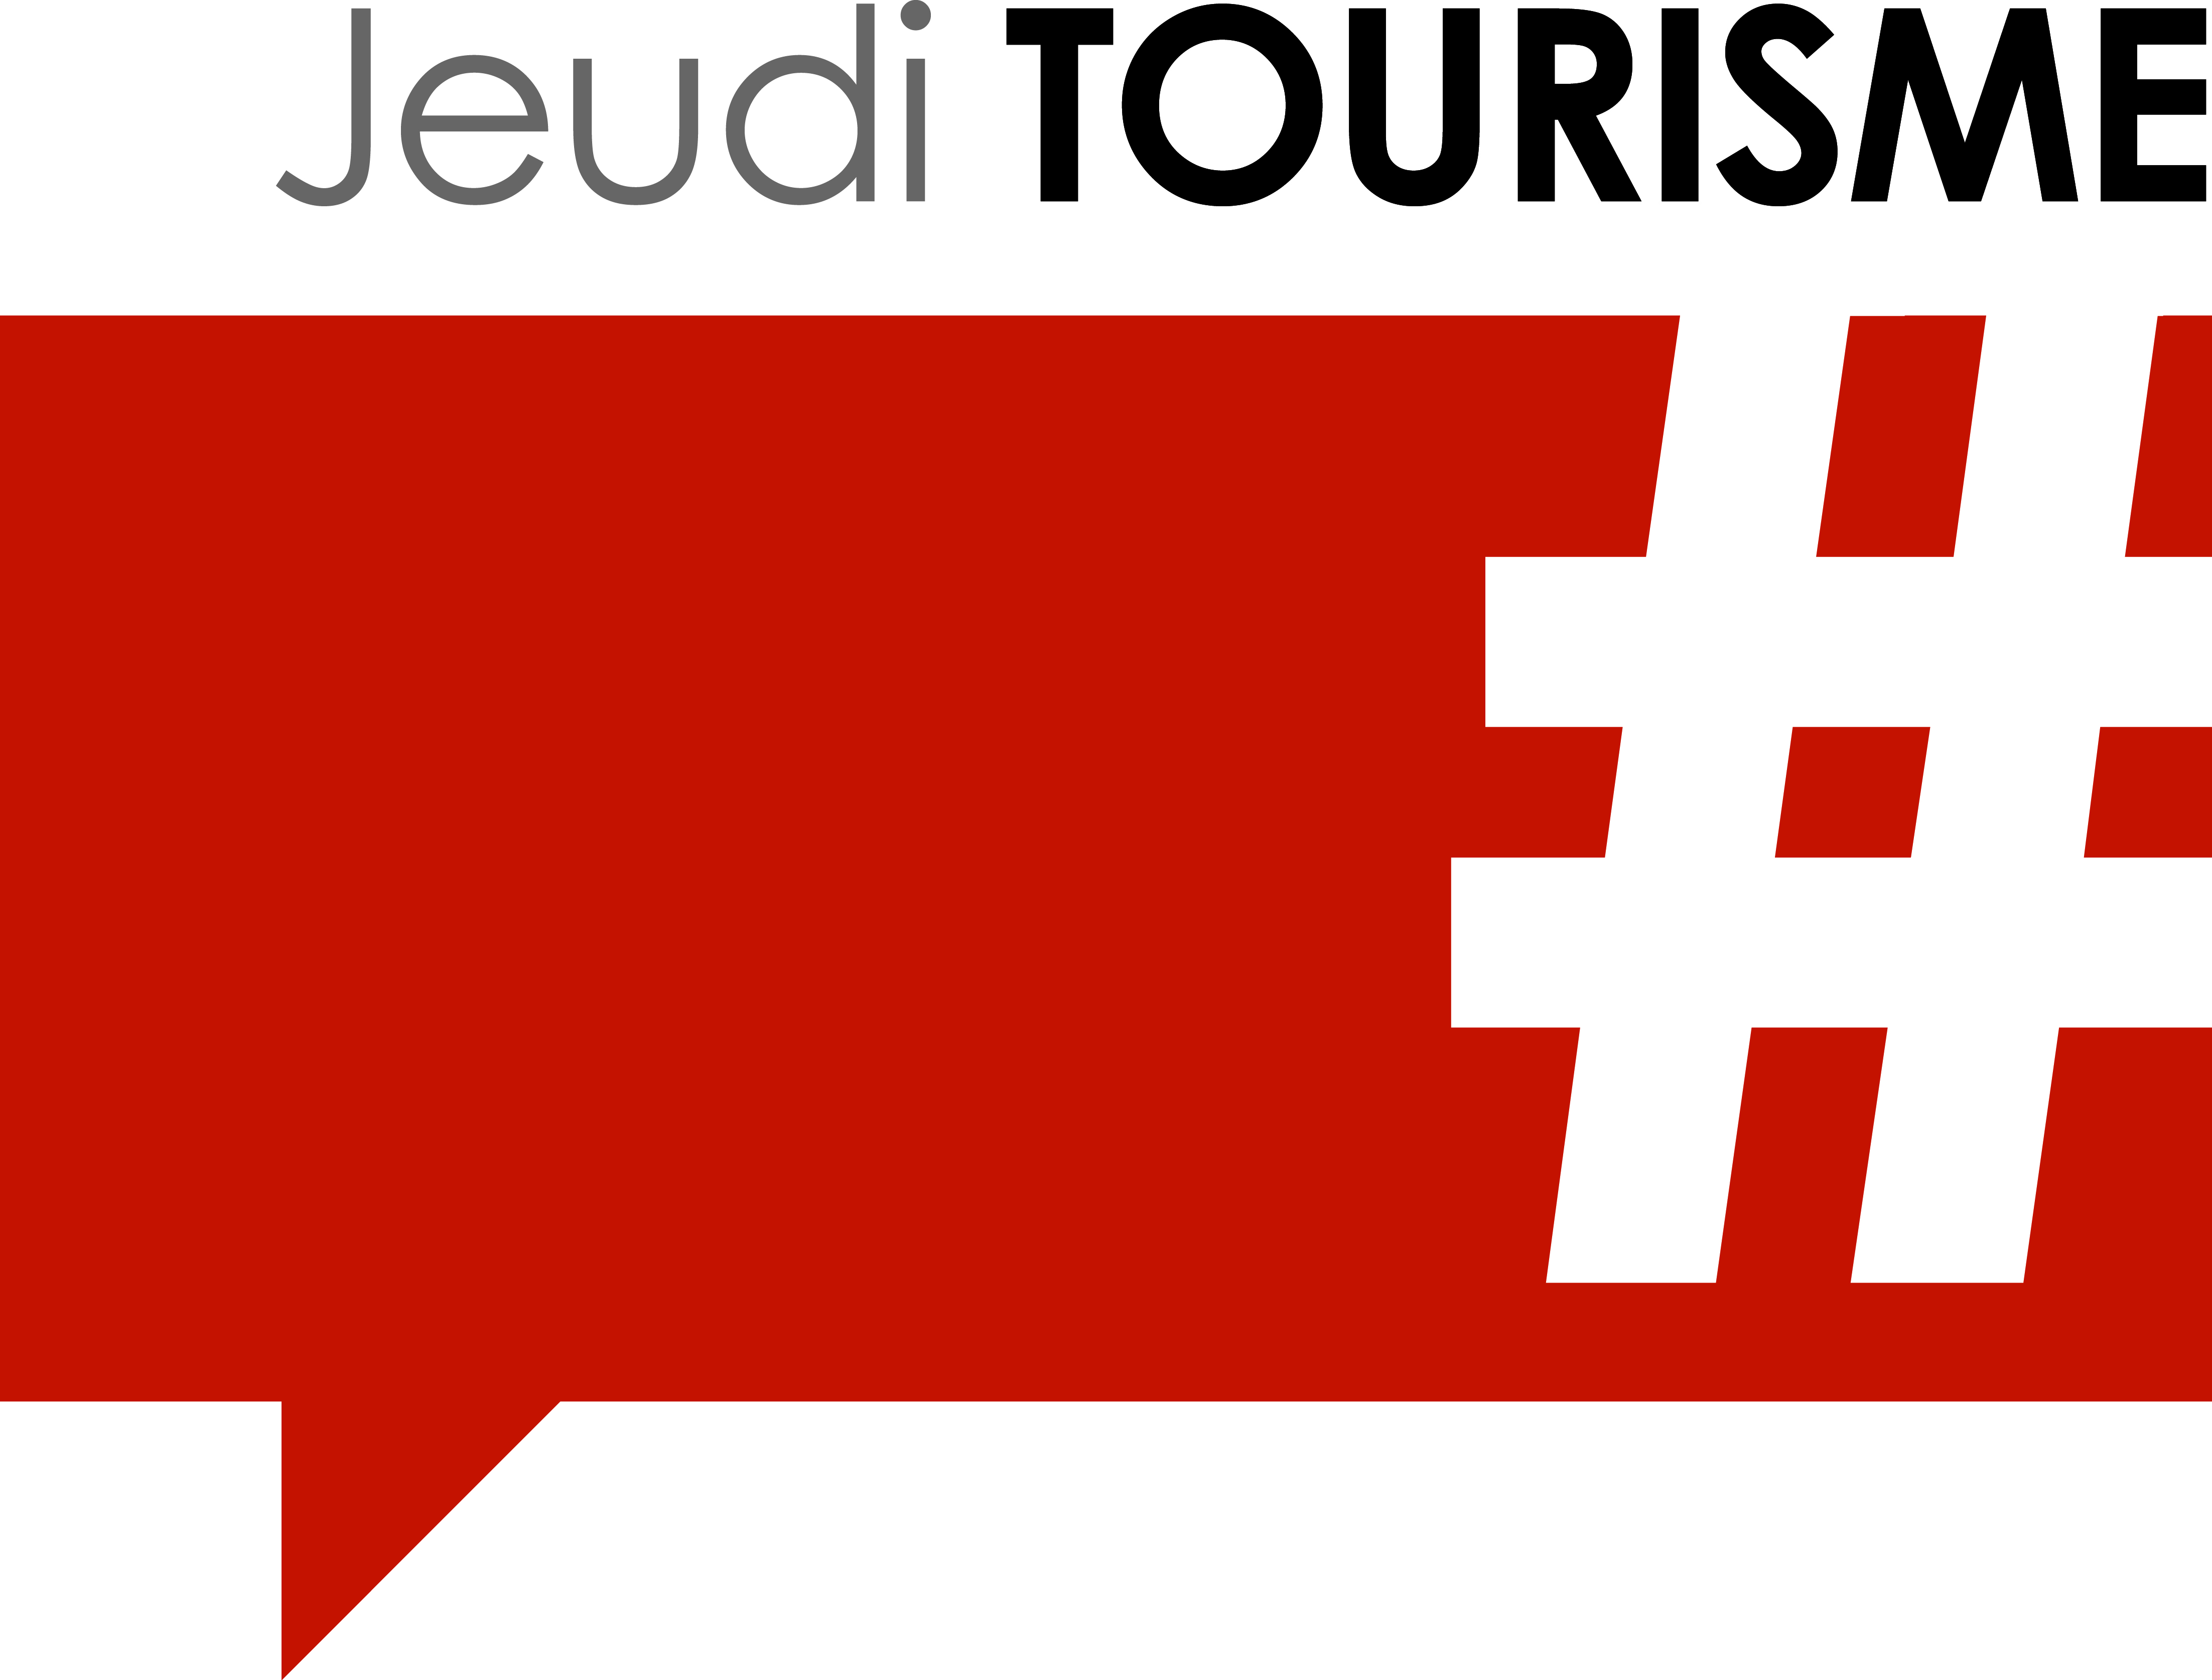 Logo_JeudiTourisme_300dpi